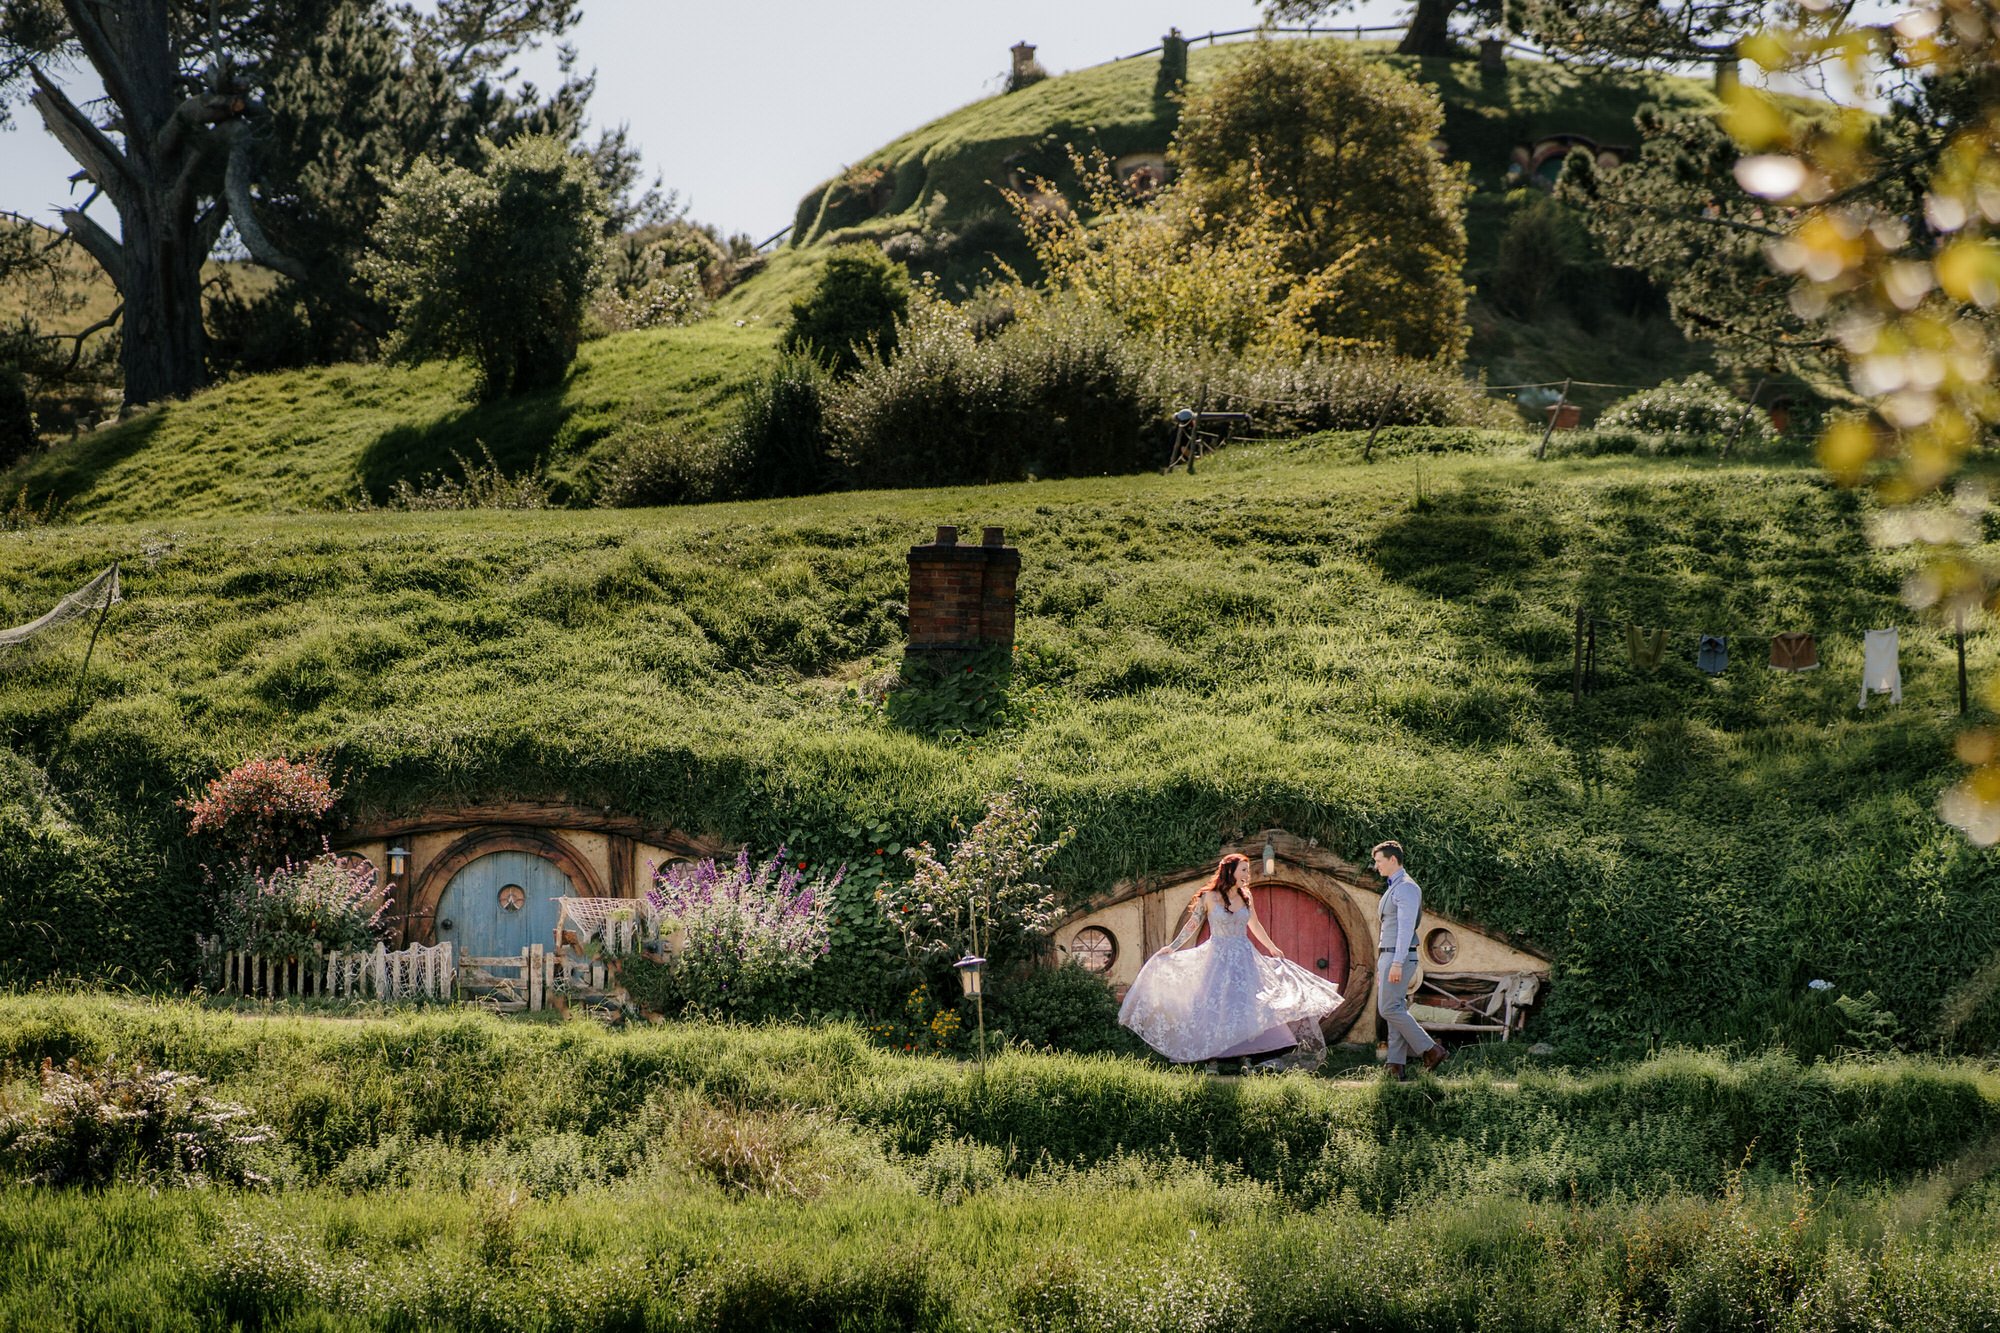 hobbiton-tour-matamata-best-wedding-venue-top-photographer-auckland-videography-elopement-unique-hobbit-destination-dear-white-productions (171).JPG